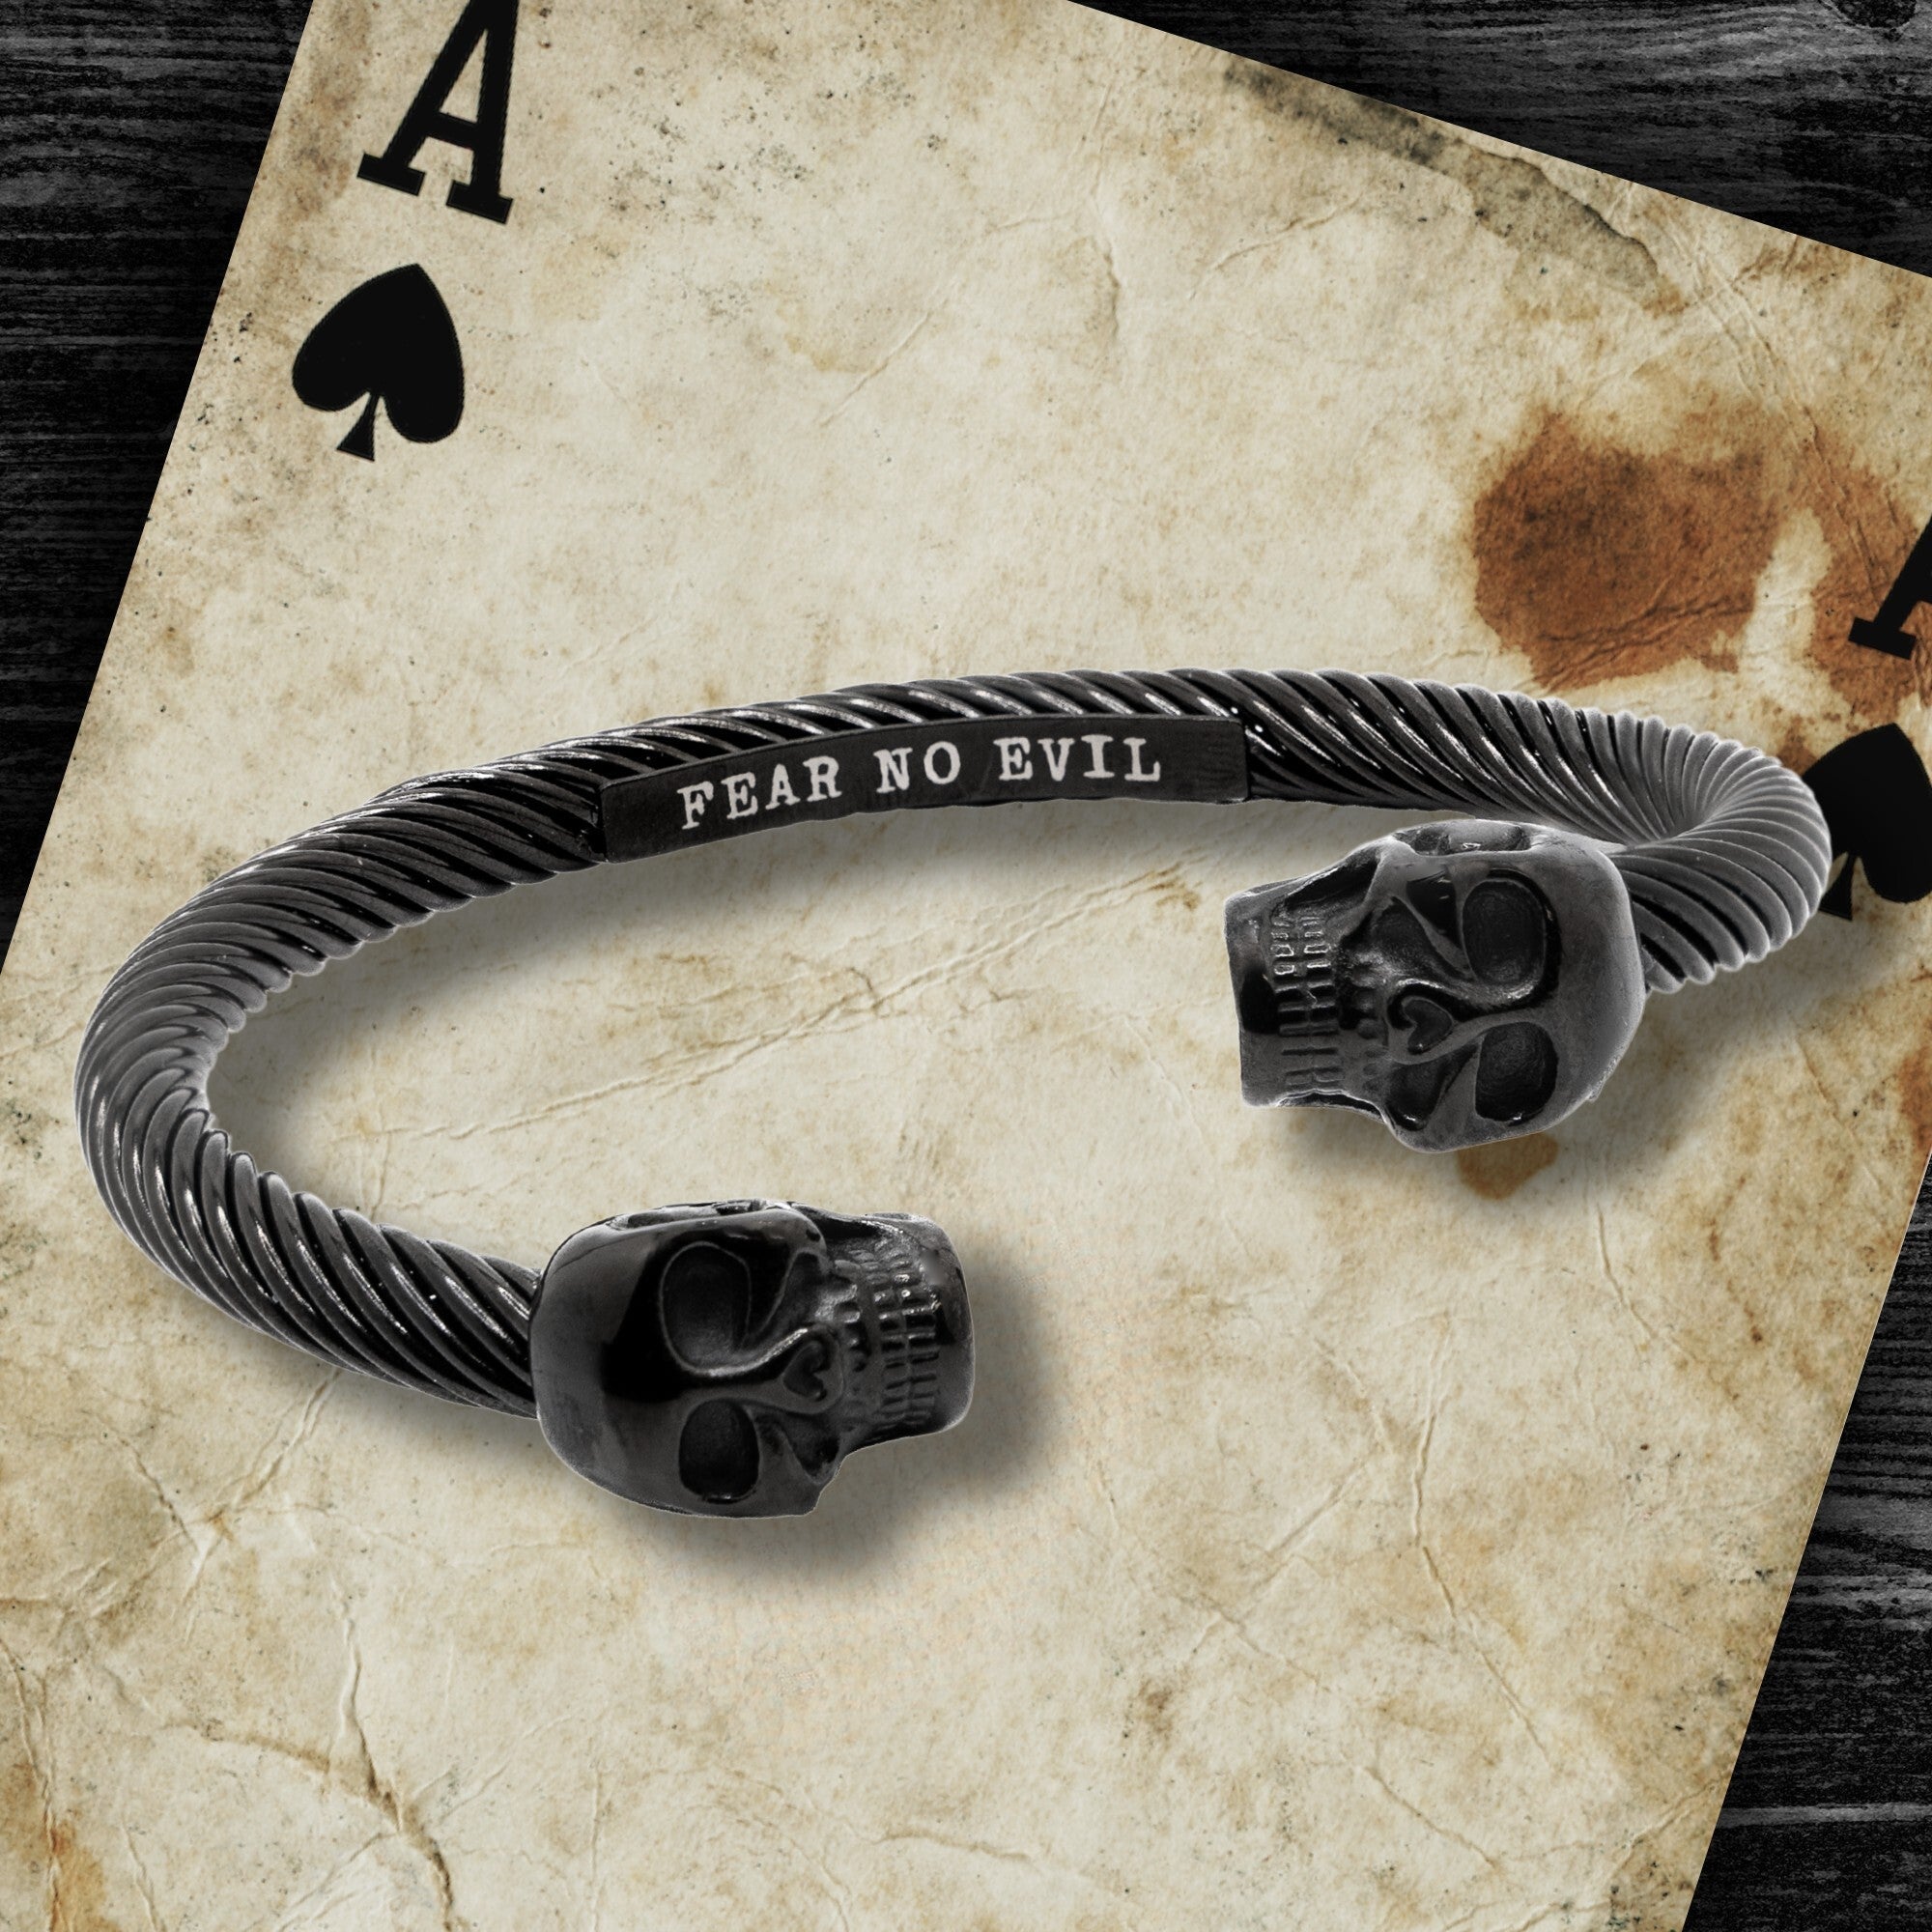 Limited Time Offer - FEAR NO EVIL Bracelet Set - Fear No Evil and Valhalla Warrior Morse Code Bracelet